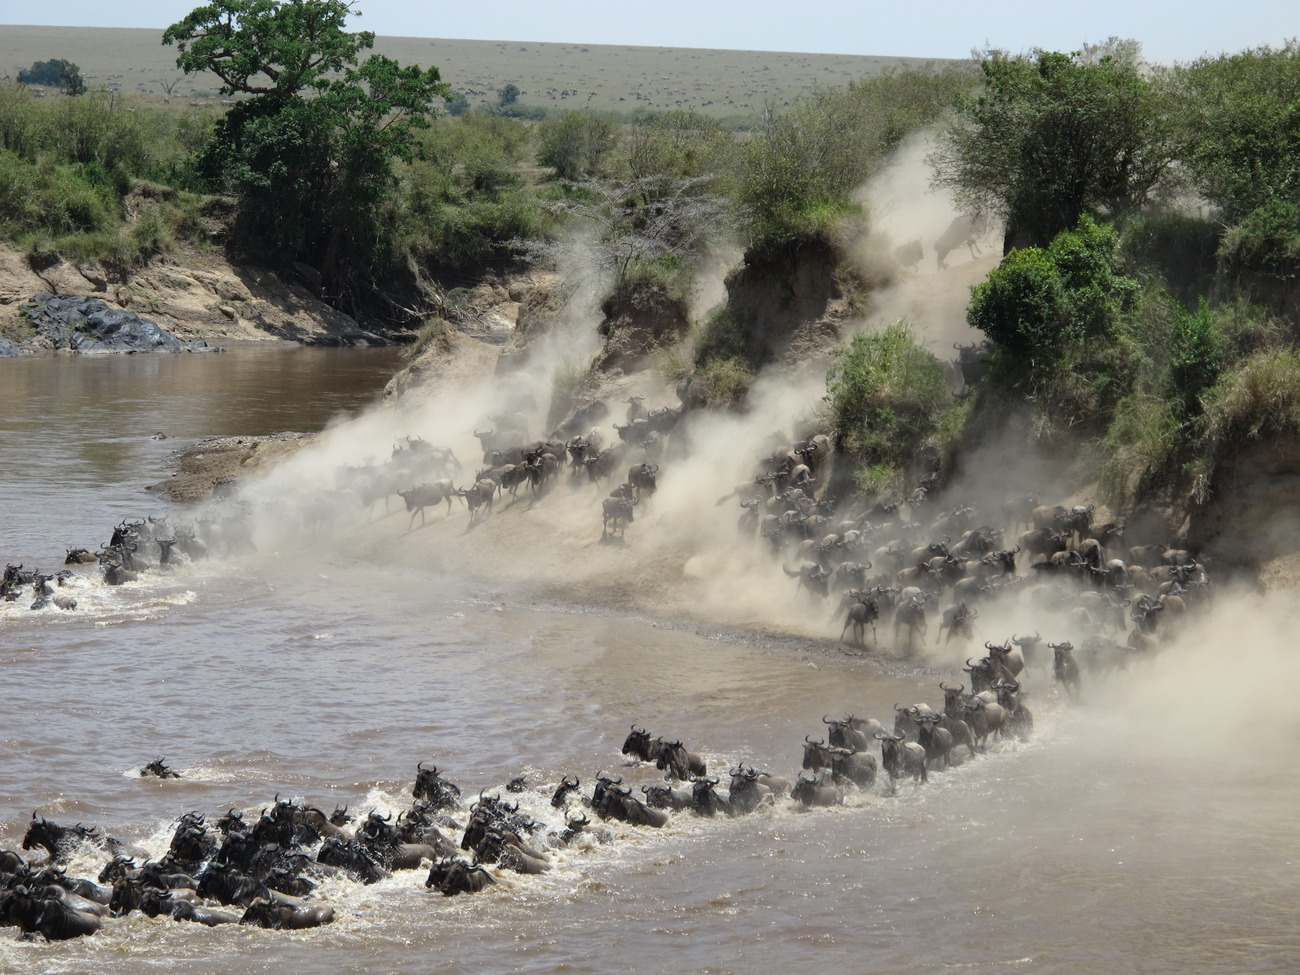 A gran migración dos gusanos na ruta Kenia - Tanzania